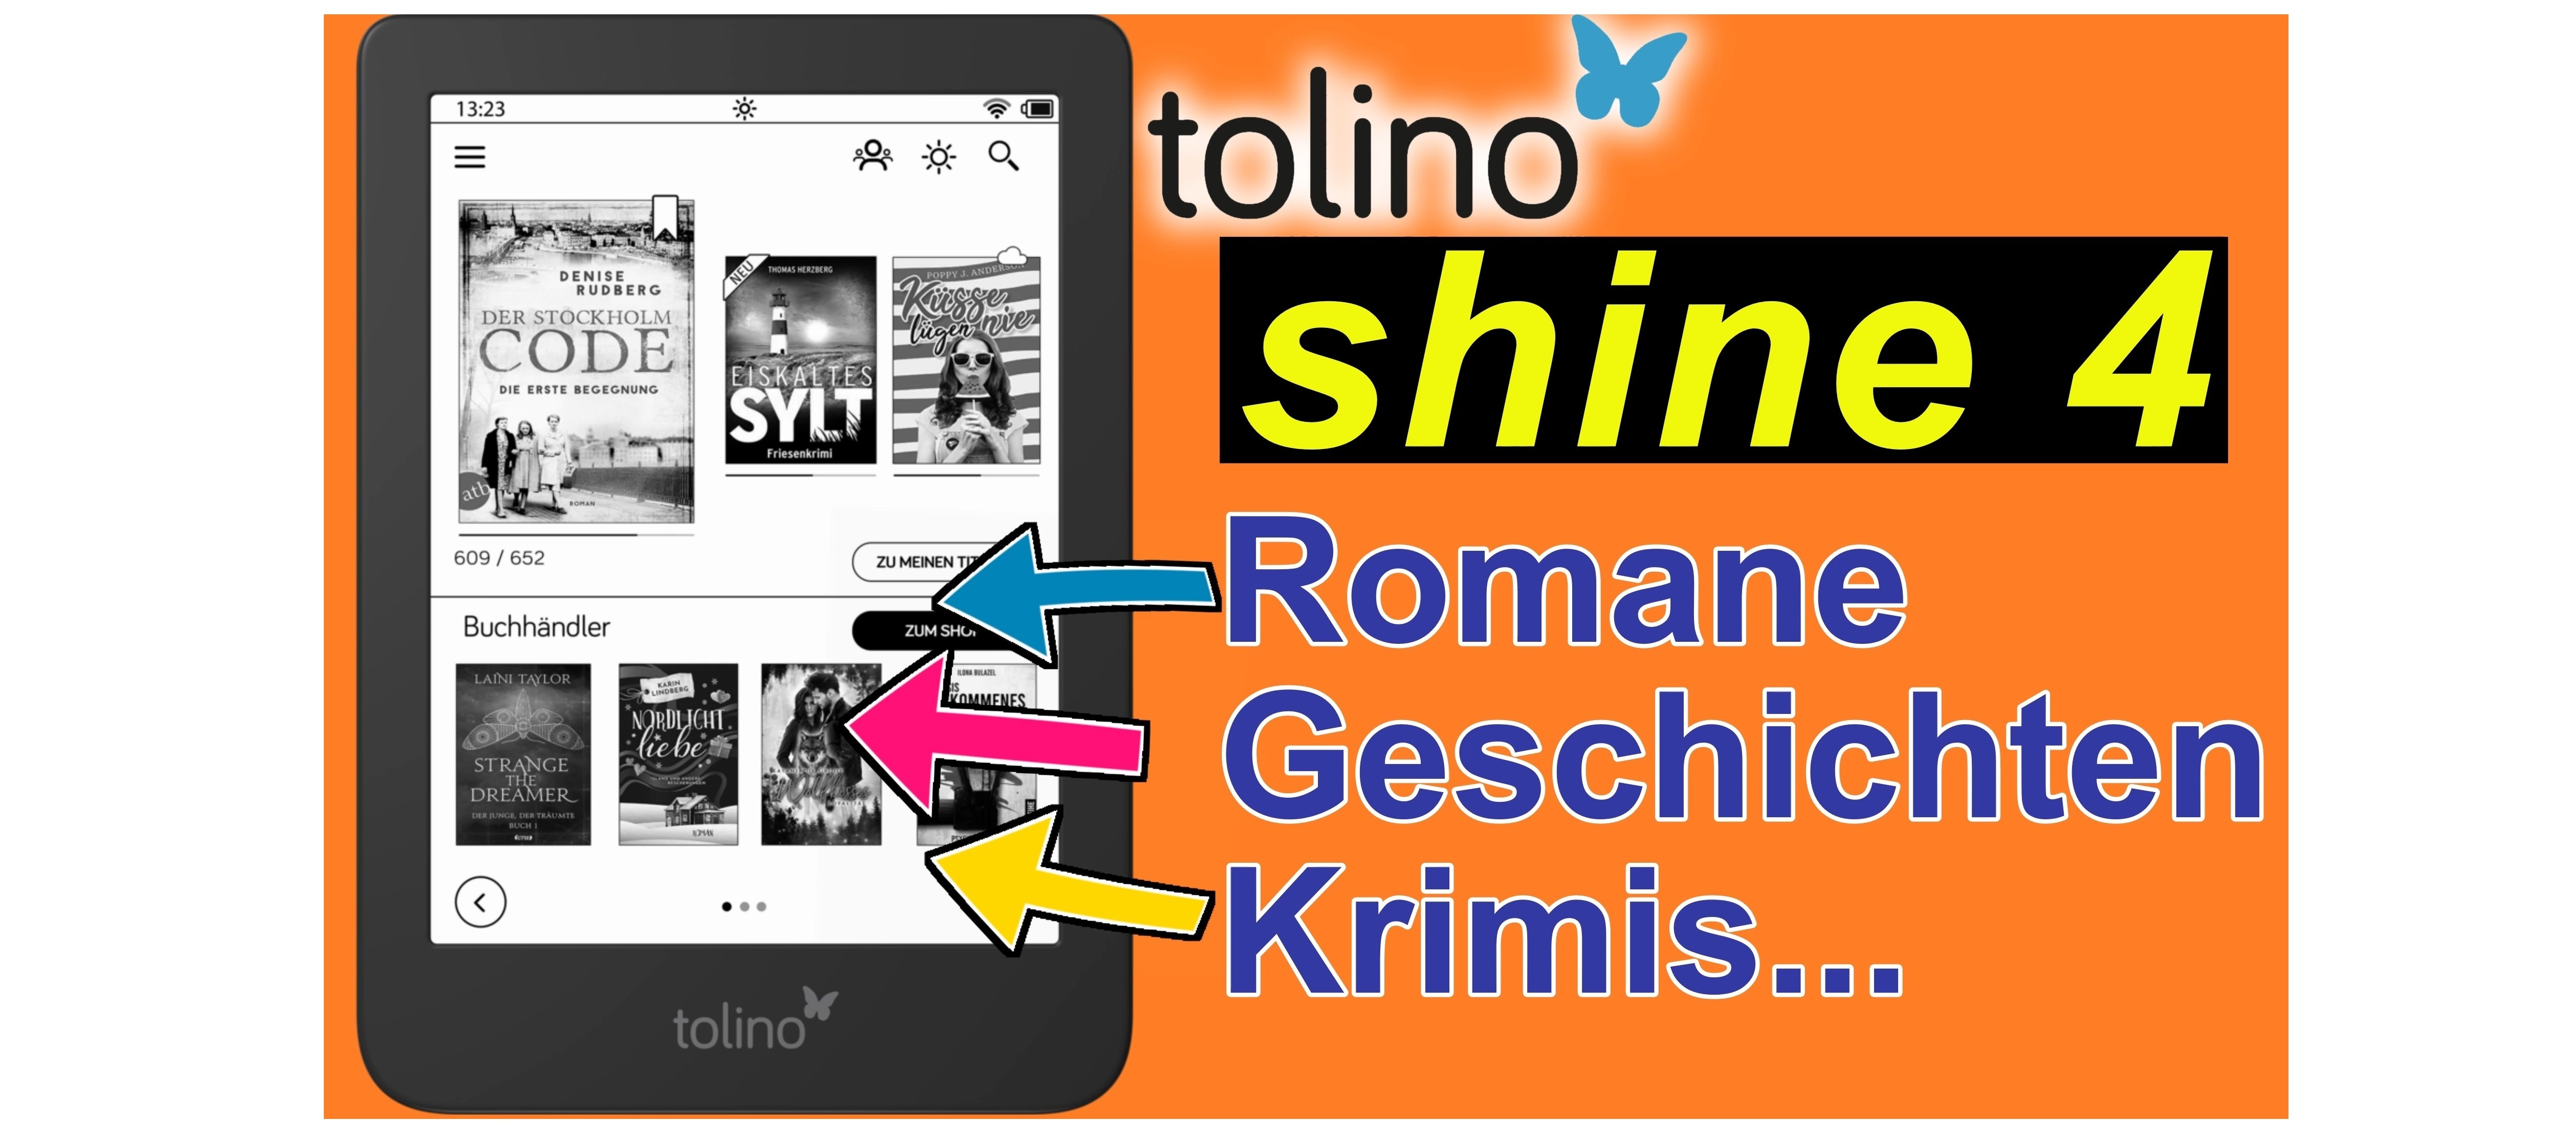 Tolino Shine 4 - eBooks, Romane und Krimis